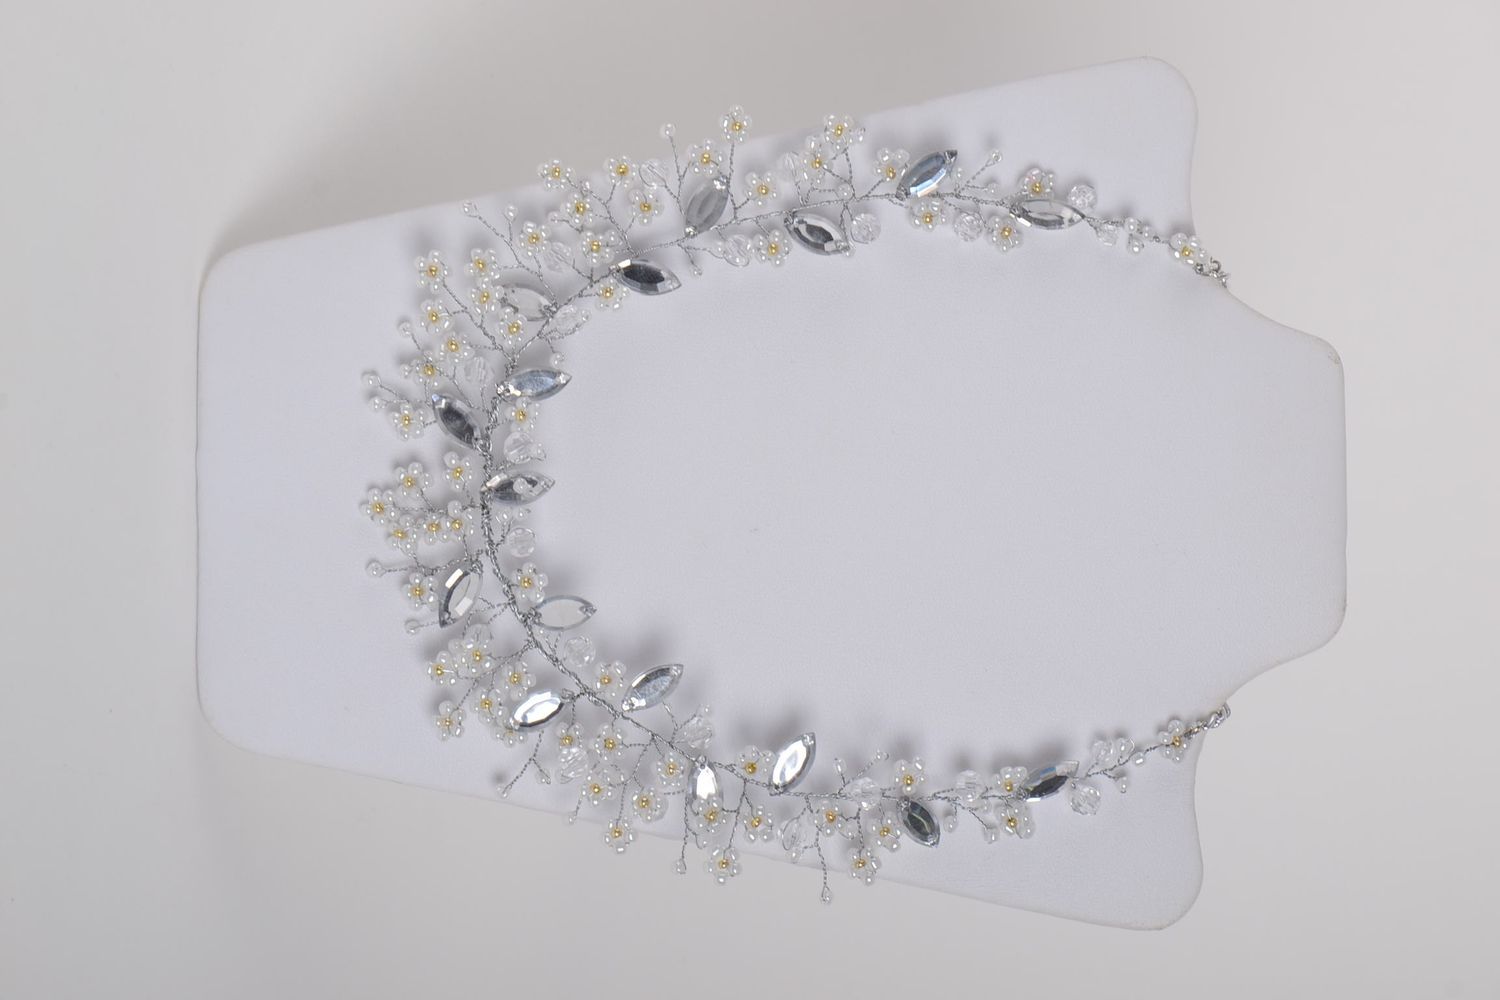 Handmade beaded accessory stylish wedding jewelry elegant necklace gift photo 2